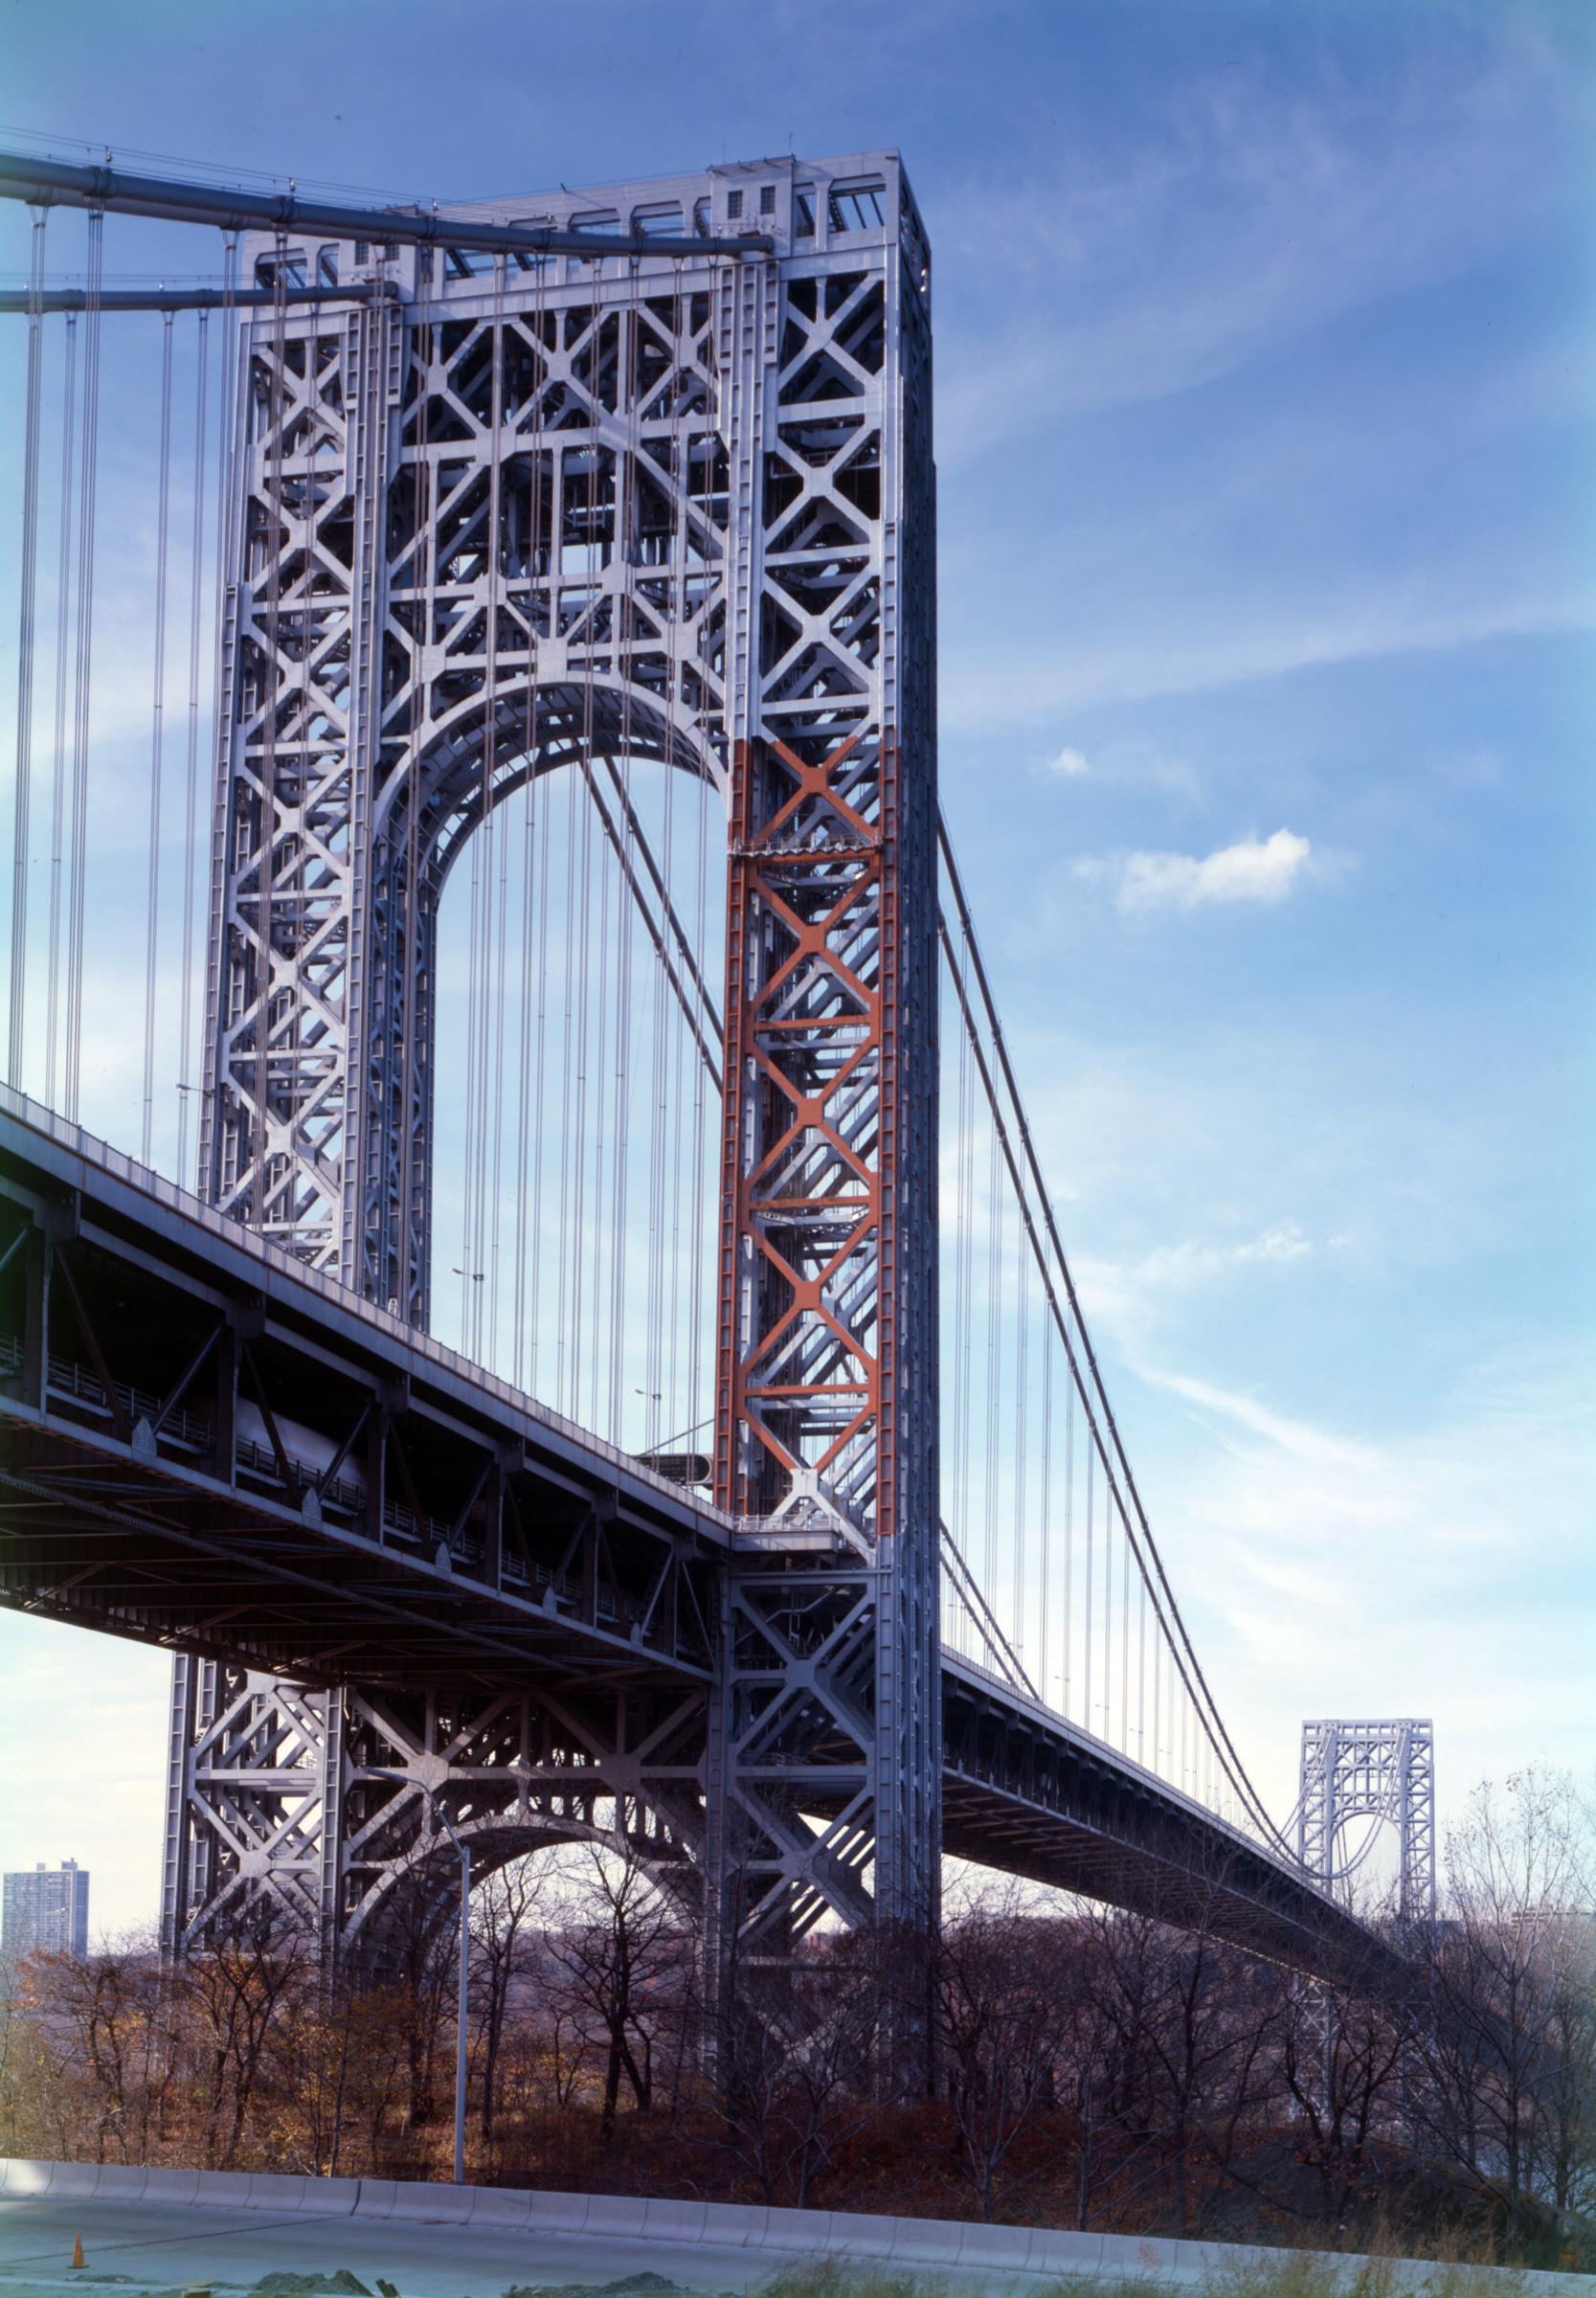 File:George Washington Bridge, HAER NY-129-66.jpg - Wikimedia Commons